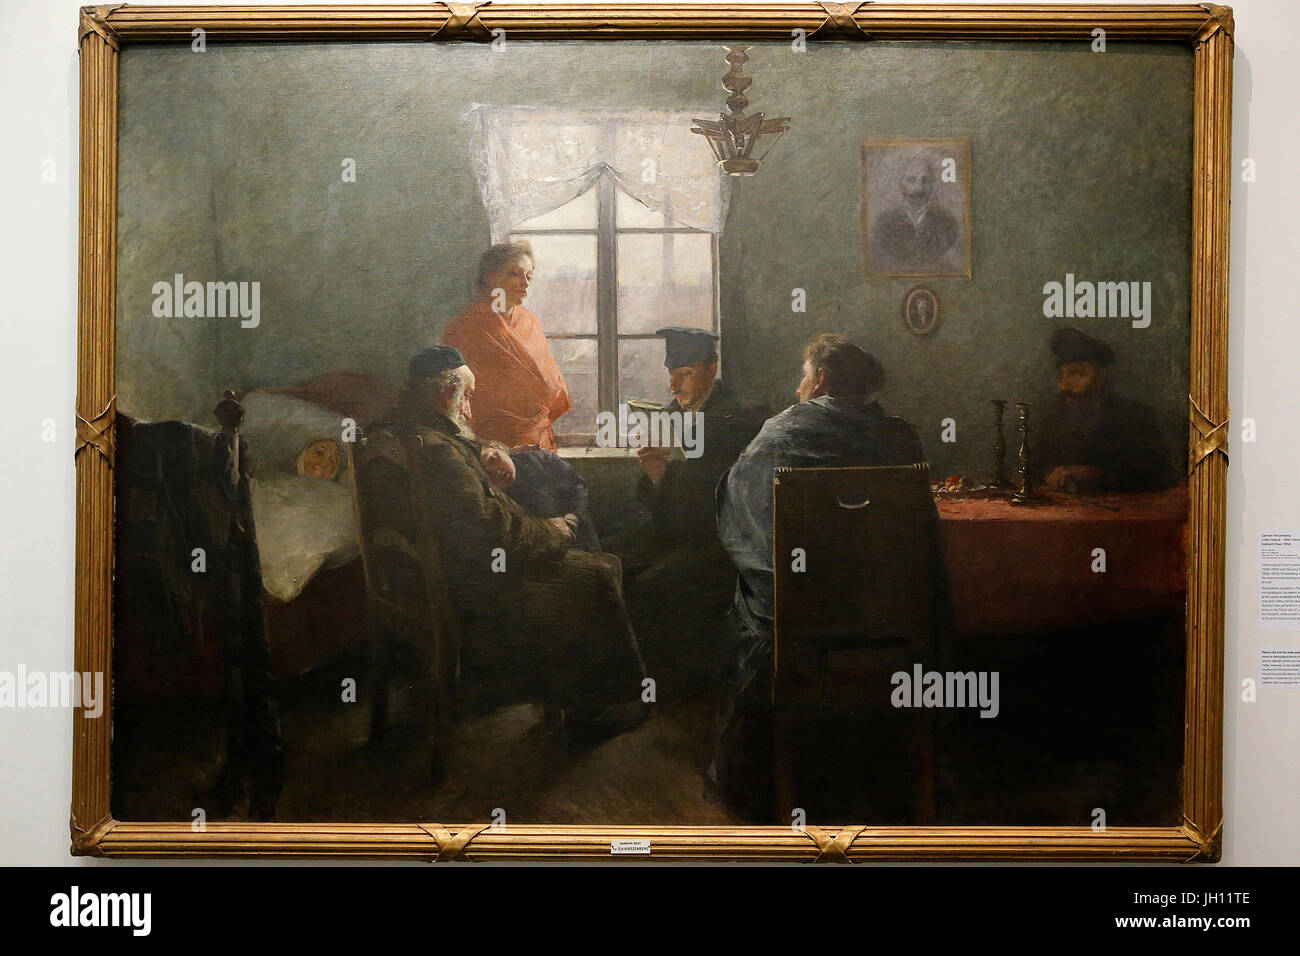 Samuel Hirszenberg. Le repos du sabbat, 1894. Huile sur toile. Ben Uri collection. United Kingdom. Banque D'Images